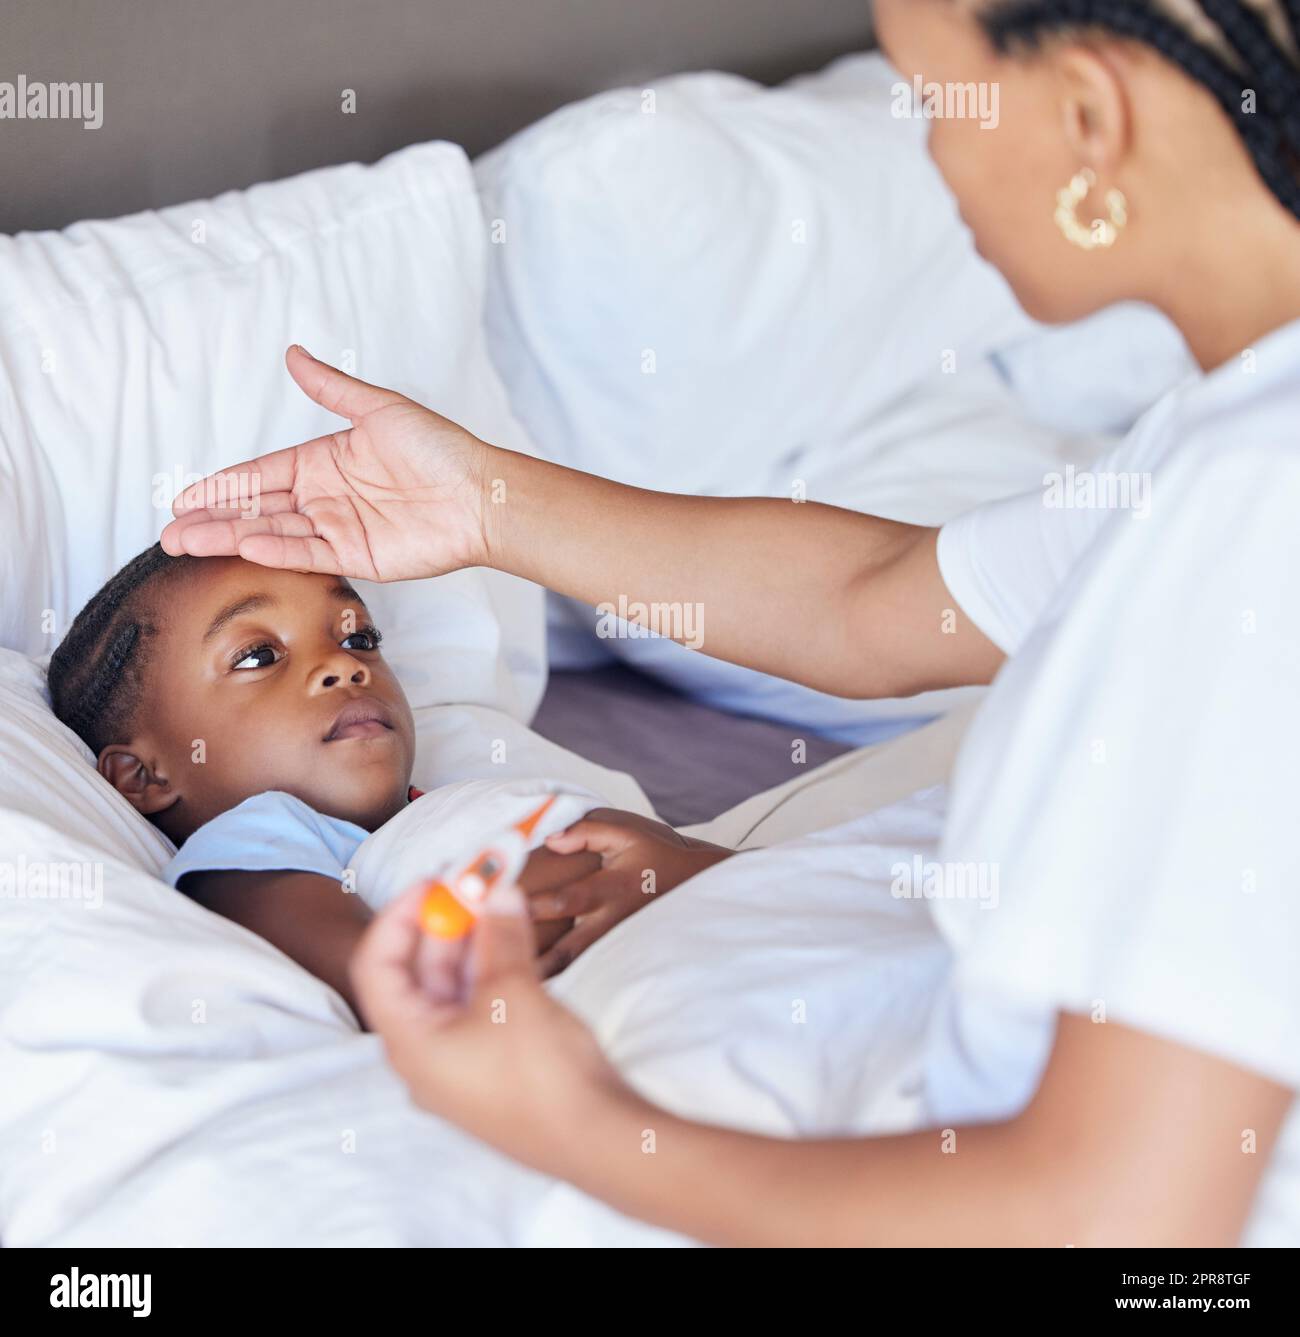 Krankes kleines Mädchen im Bett, während ihre Mutter ein Thermometer benutzt, um ihre Temperatur zu messen. Schwarze, alleinerziehende Tochter Stirn. Ein afroamerikanisches Kind fühlt sich krank, während seine Mutter Fieber untersucht Stockfoto